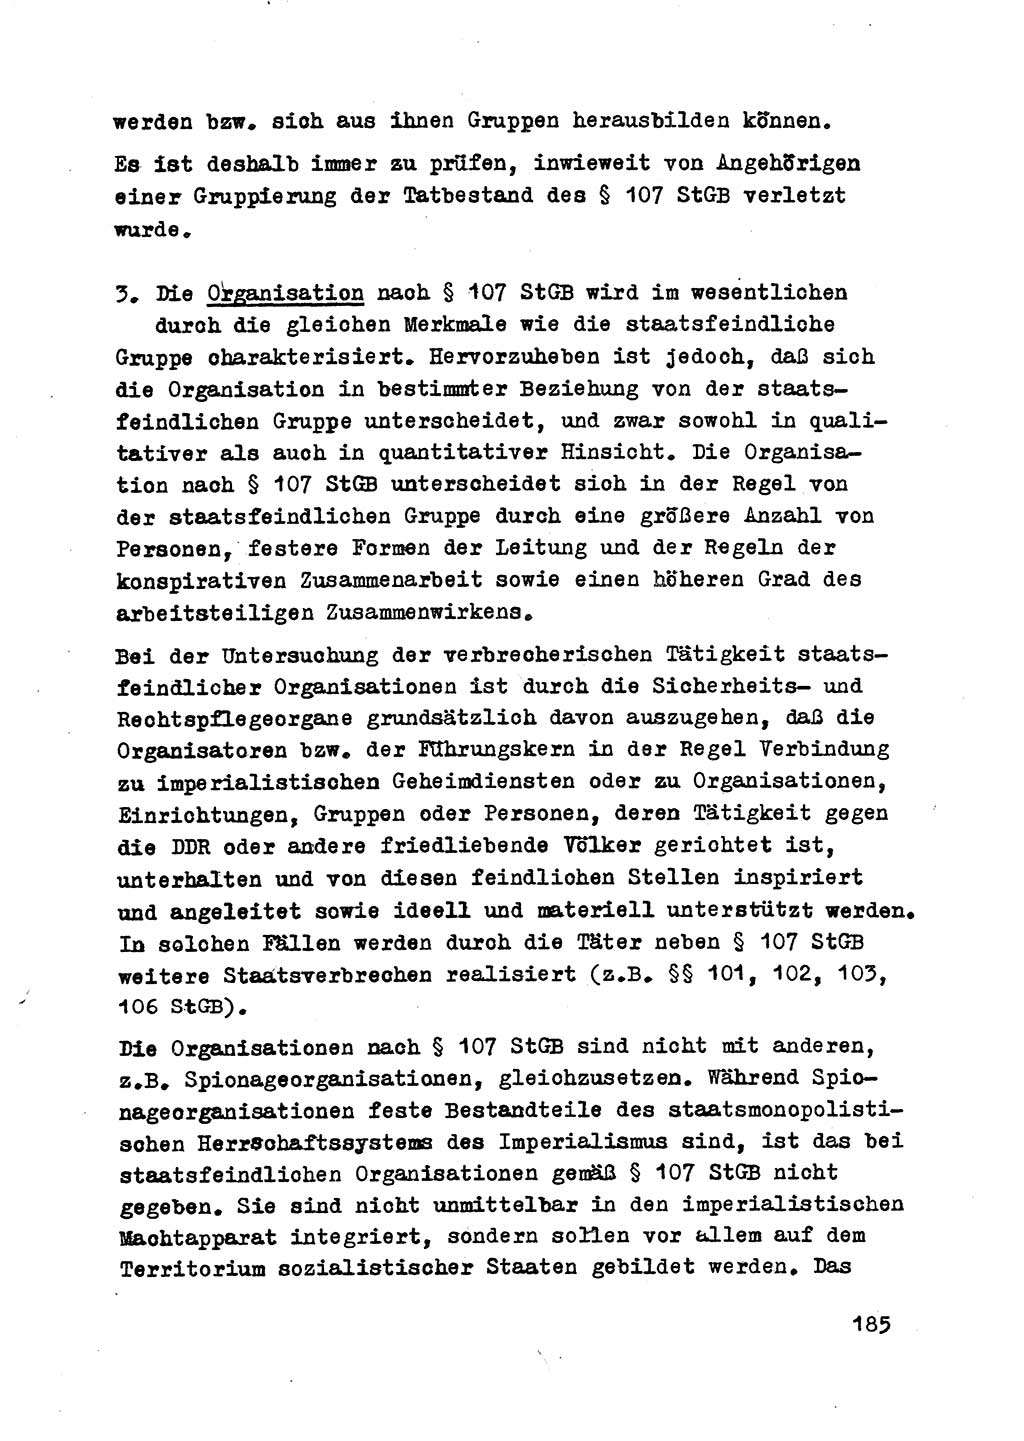 Strafrecht der DDR (Deutsche Demokratische Republik), Besonderer Teil, Lehrmaterial, Heft 2 1969, Seite 185 (Strafr. DDR BT Lehrmat. H. 2 1969, S. 185)